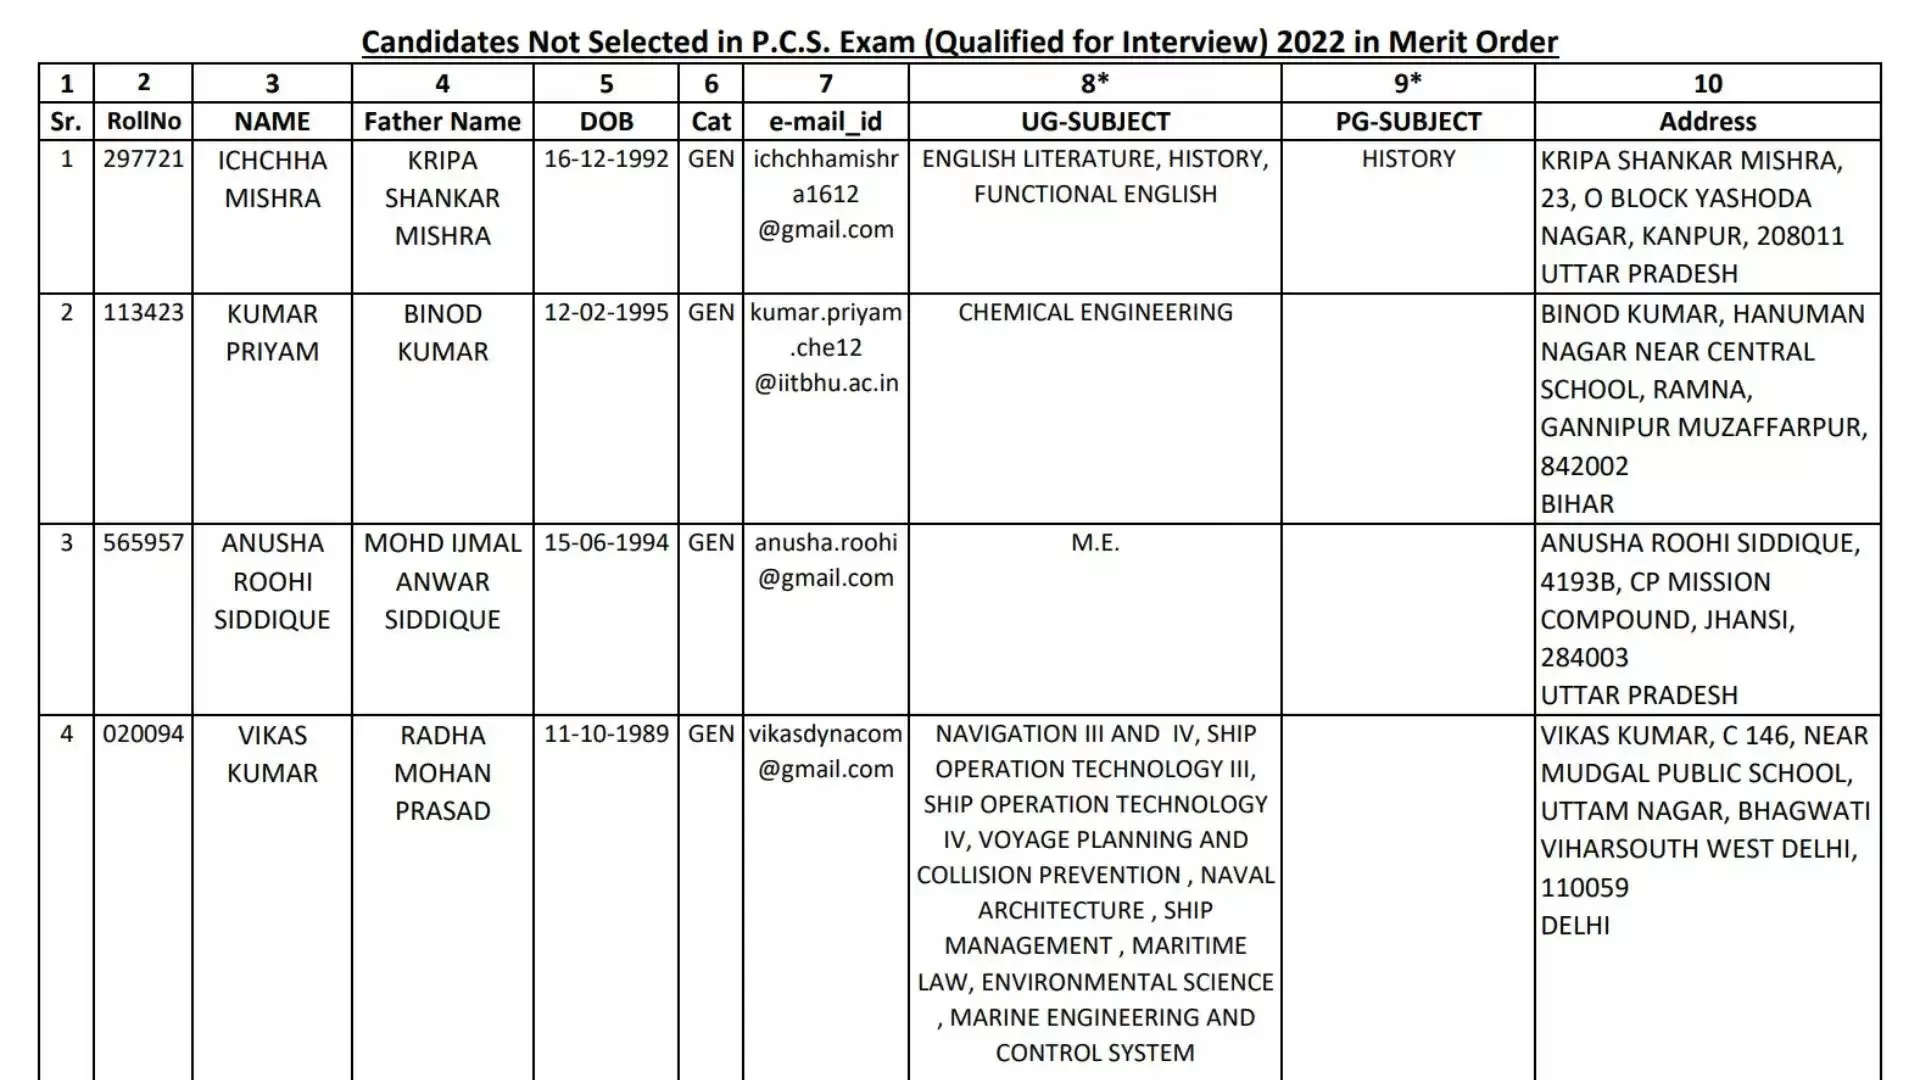 UPPSC 2022 प्रारंभिक परीक्षा अंक और कट ऑफ: 2023 के लिए साक्षात्कार के लिए चयनित उम्मीदवार